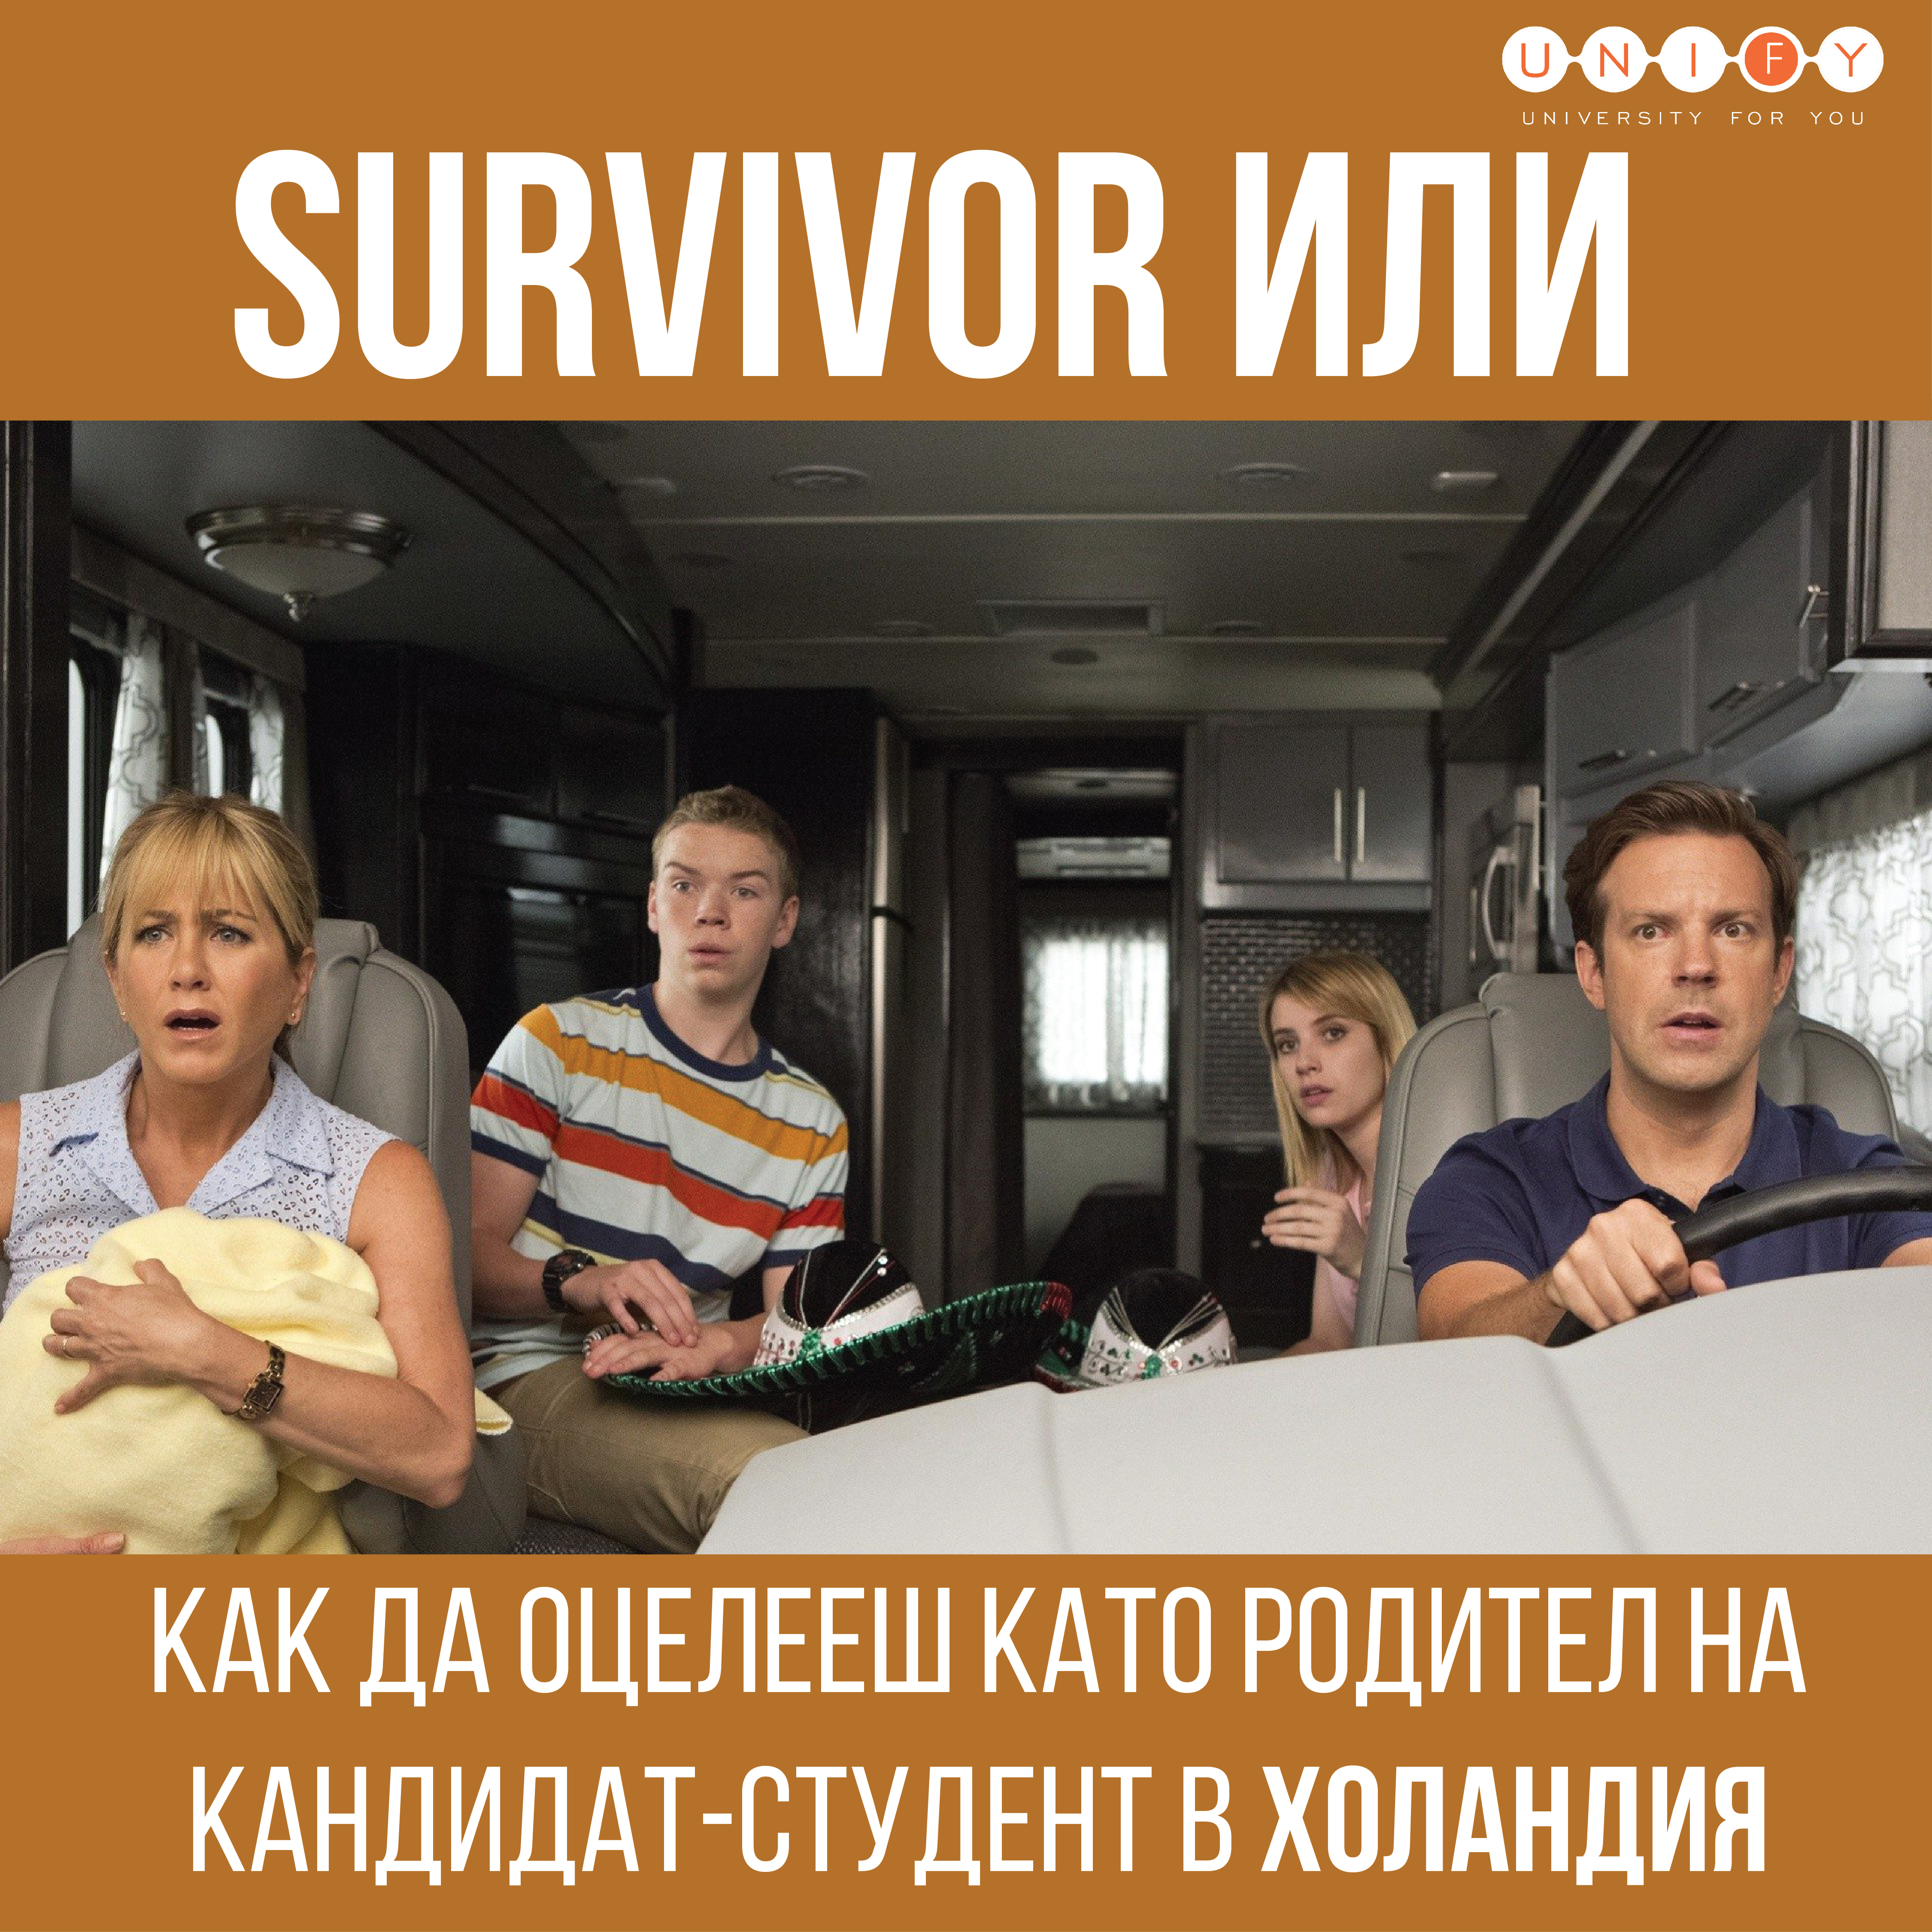 "Survivor" или как да оцелееш като родител на кандидат-студент в Холандия